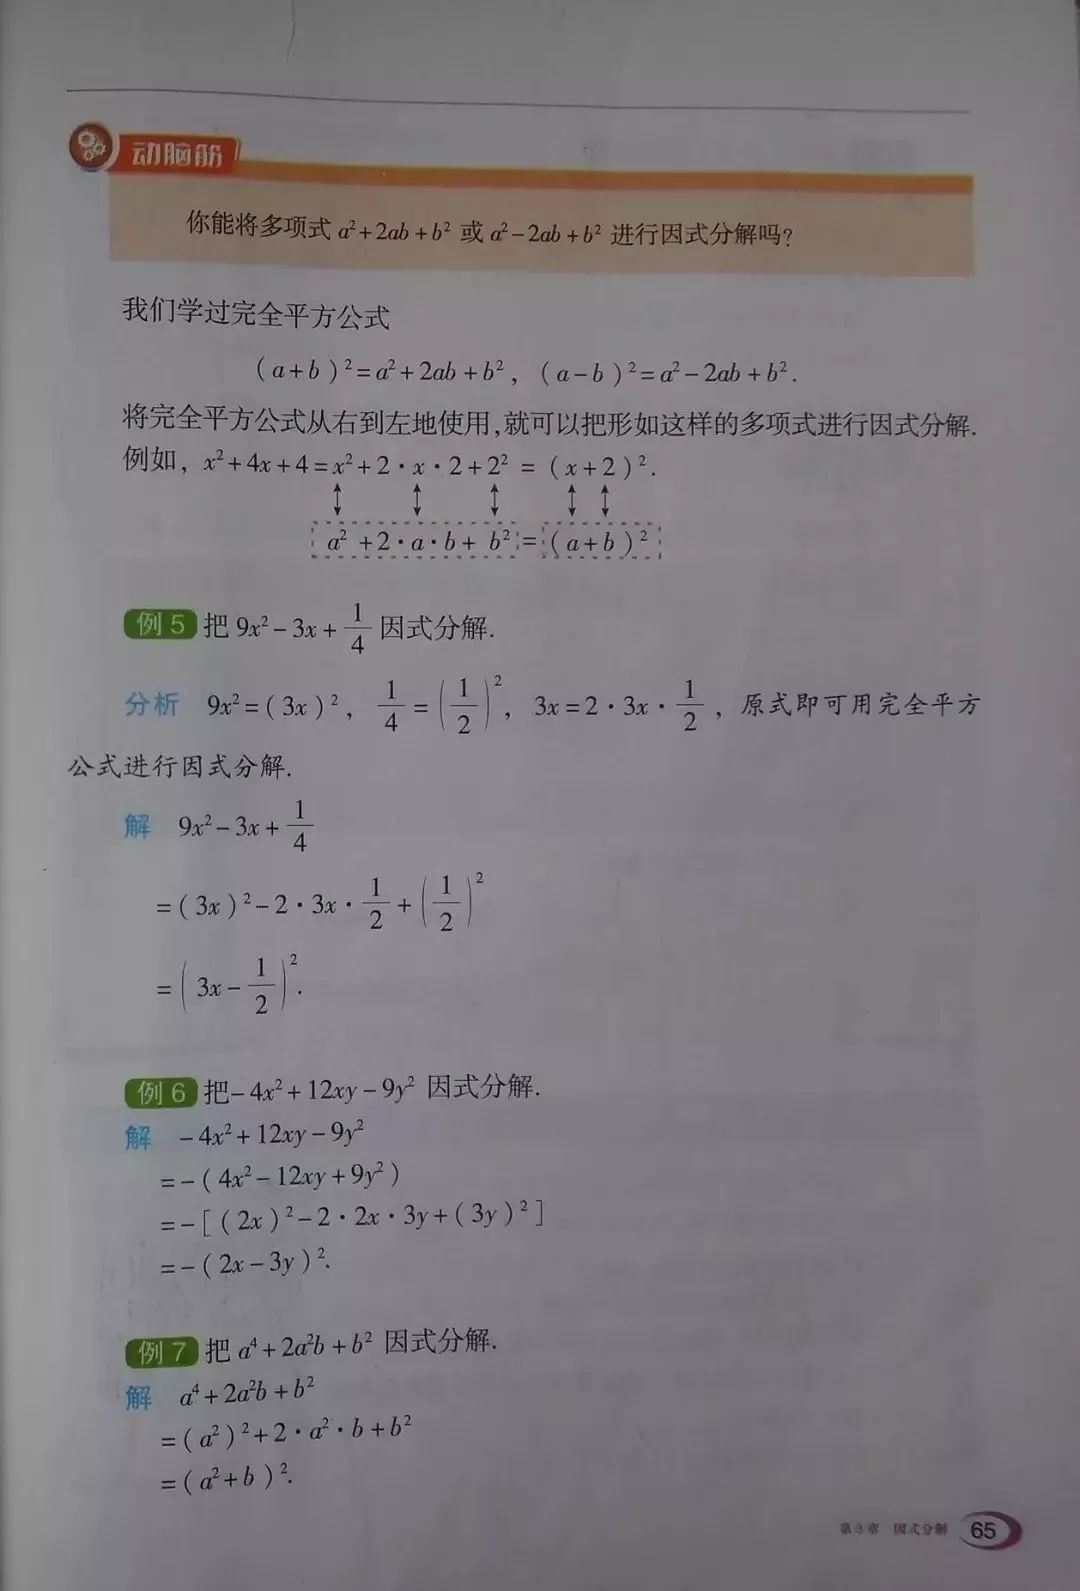 3 3 公式法 Page65 湘教版七年级数学下册电子课本 教材 教科书 好多电子课本网